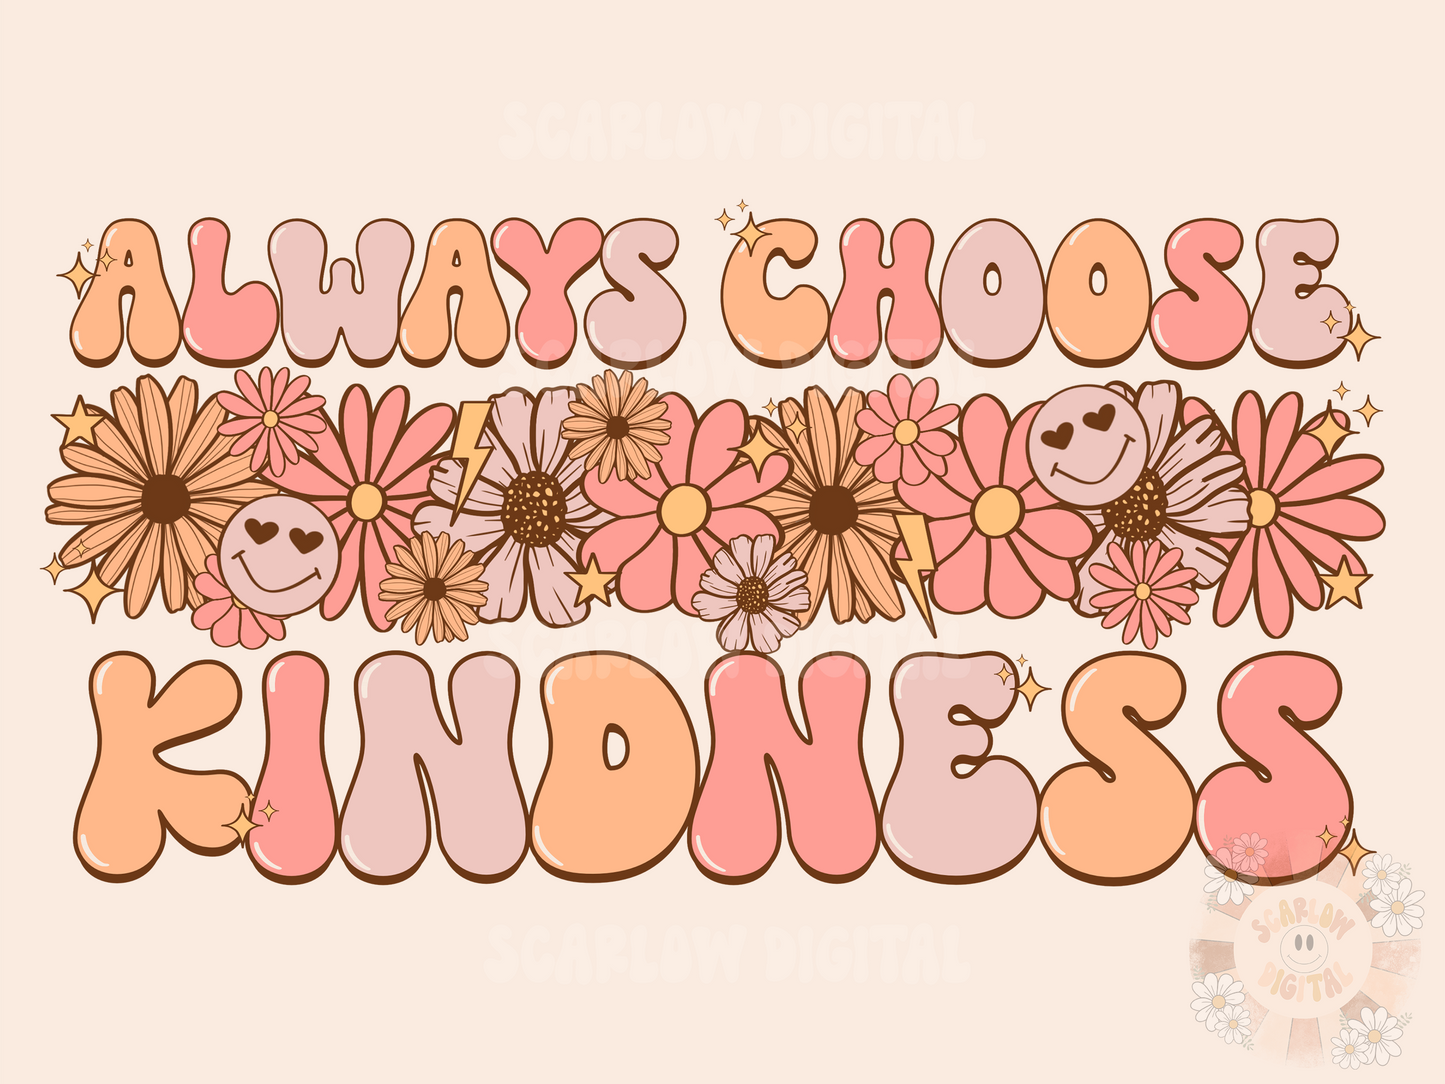 Always Choose Kindness PNG-Floral Sublimation Digital Design Download-flowers png, summertime png, spring florals png, positive png designs